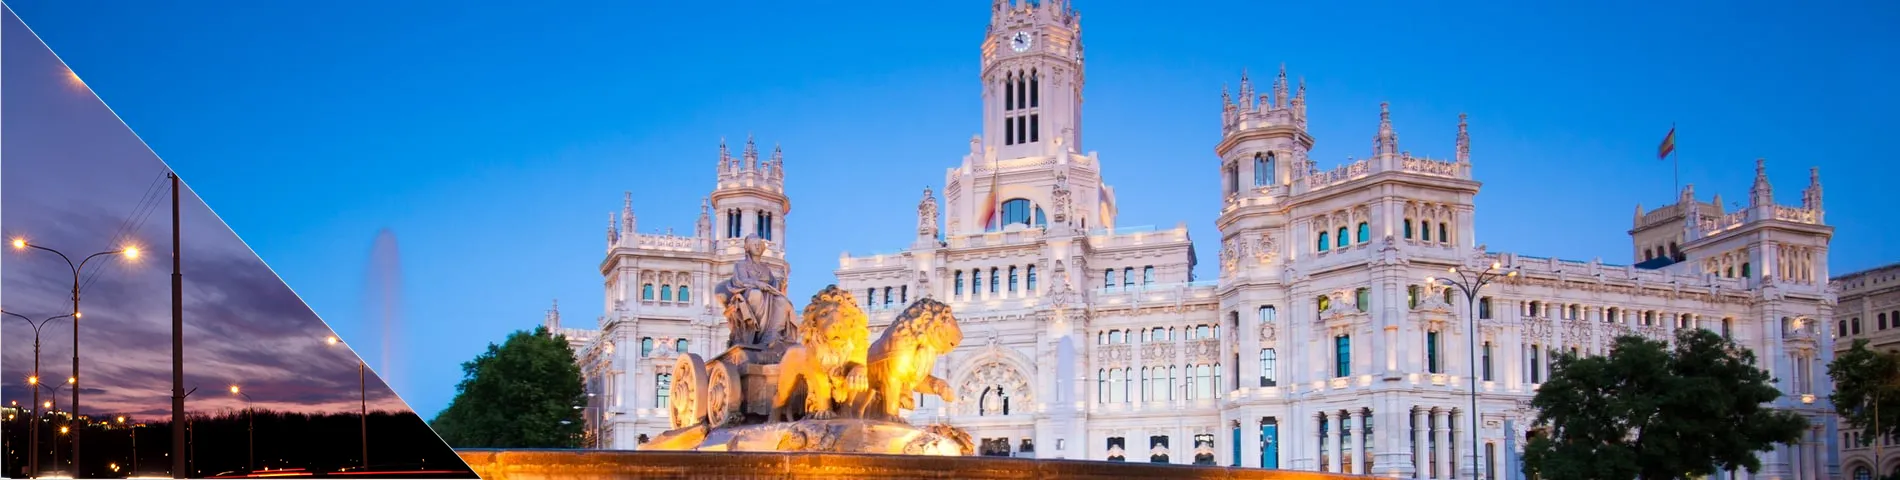 Madrid - Evening